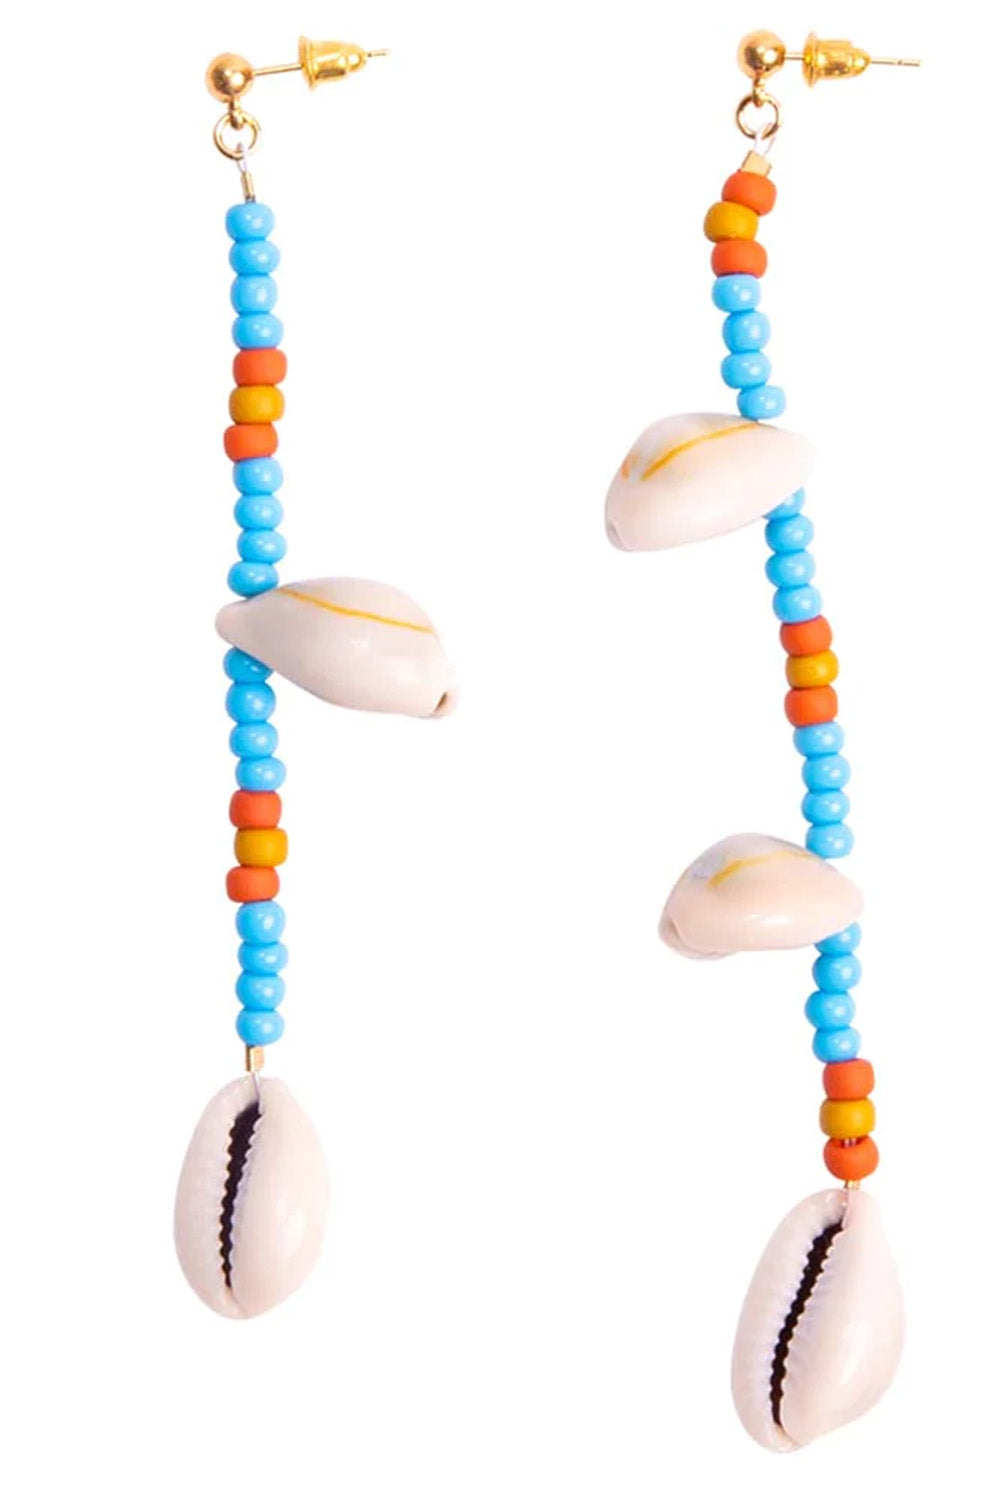 Briwok - Surf Earrings: Seead Bead